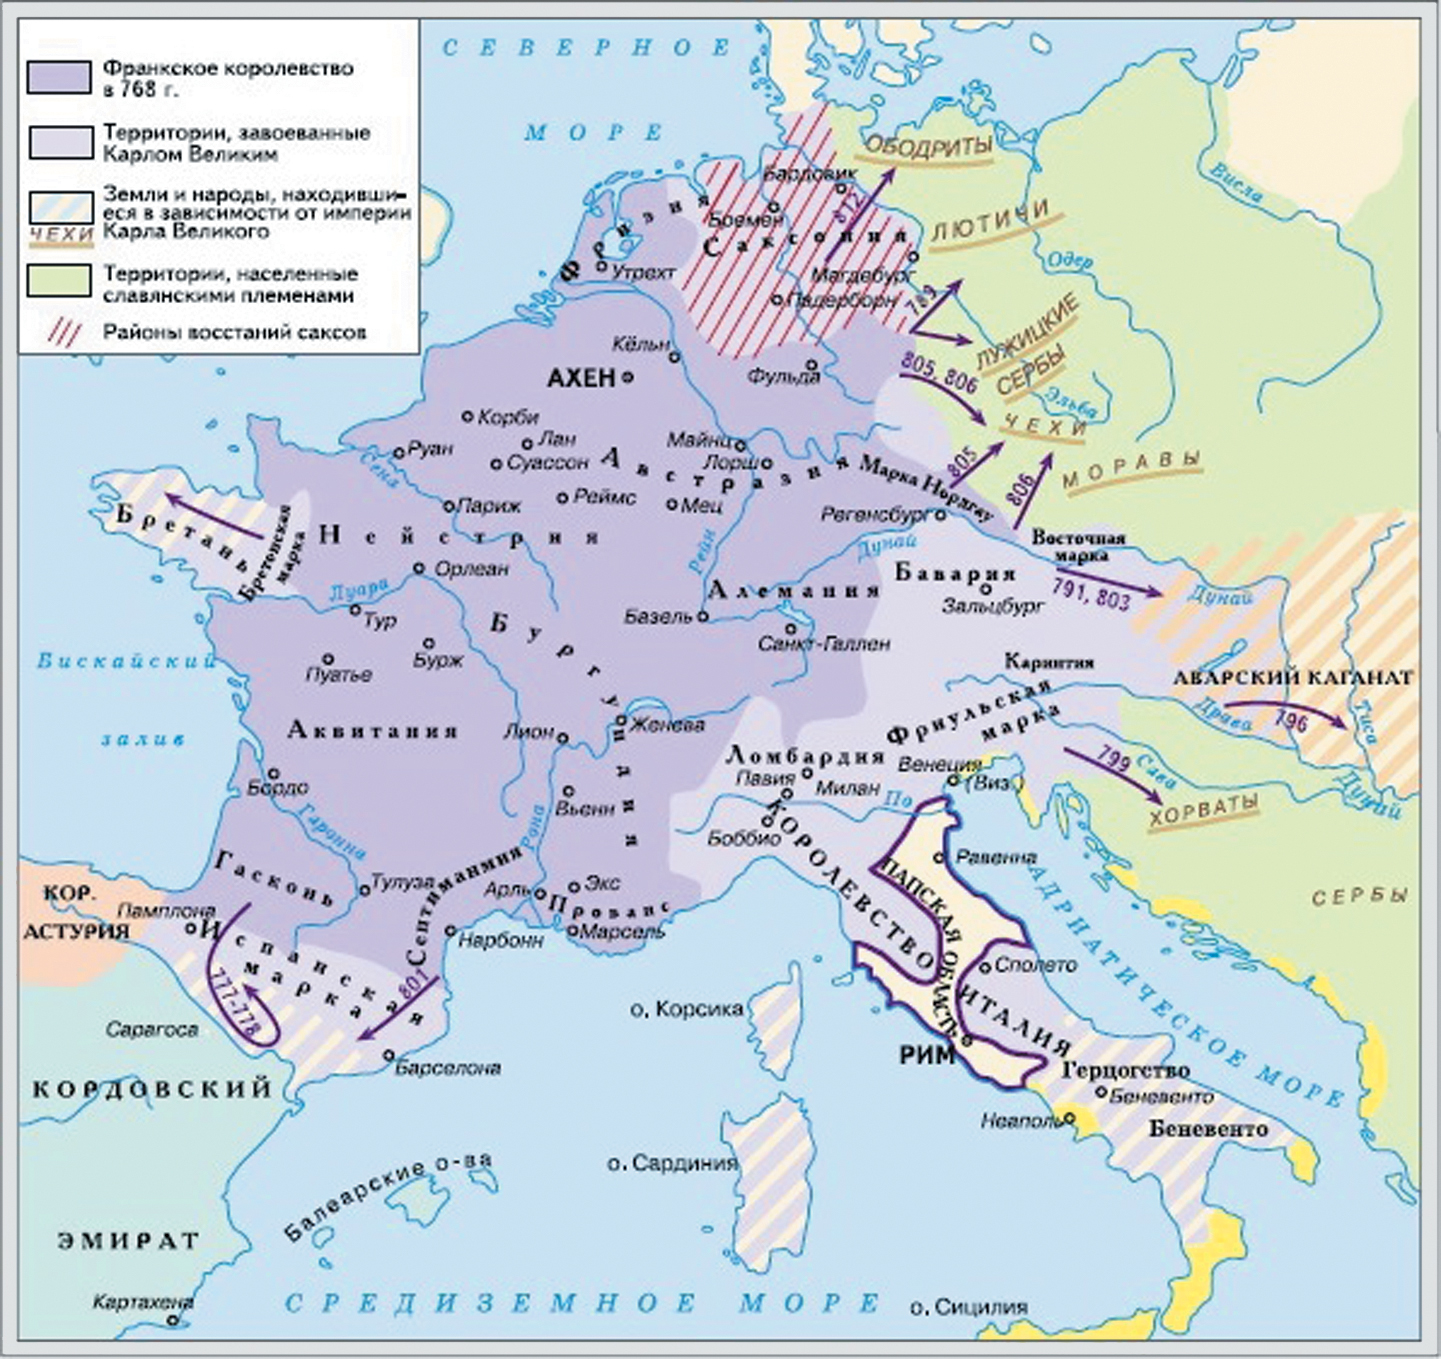 Создание франкской империи. Завоевания Франкского королевства.